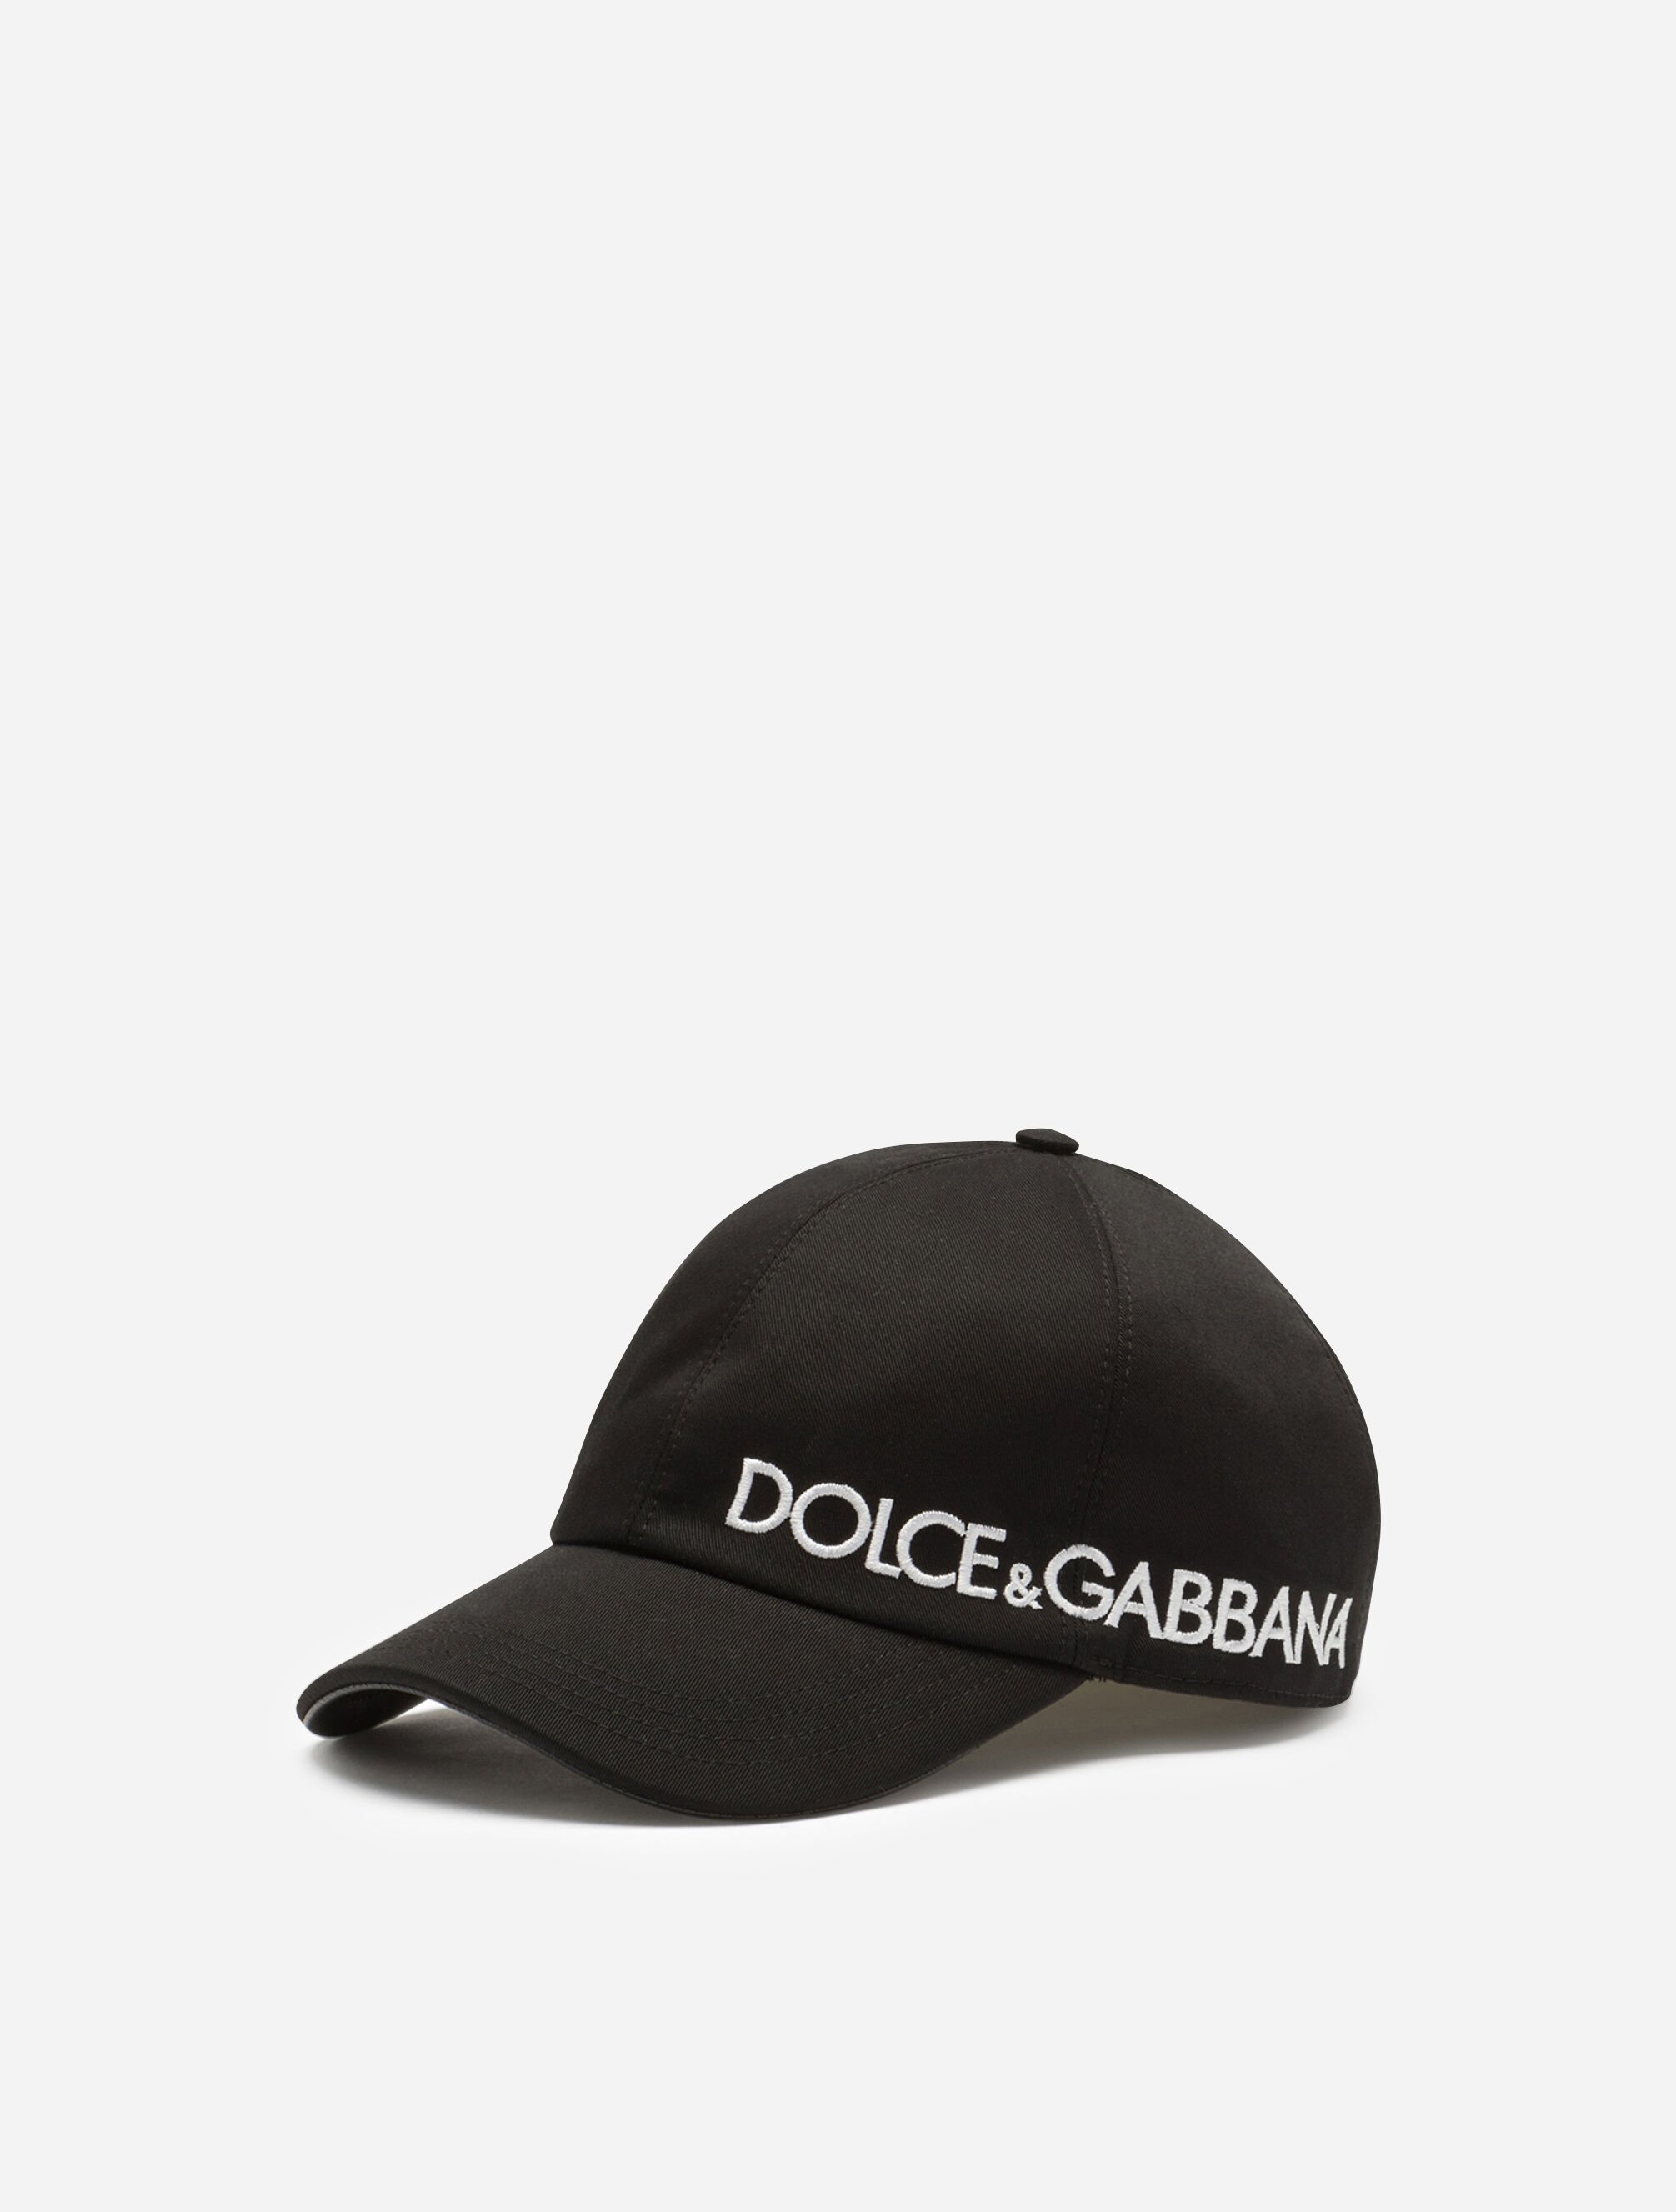 ドルチェ&ガッバーナ(Dolce & Gabbana) キャップ - キャップ